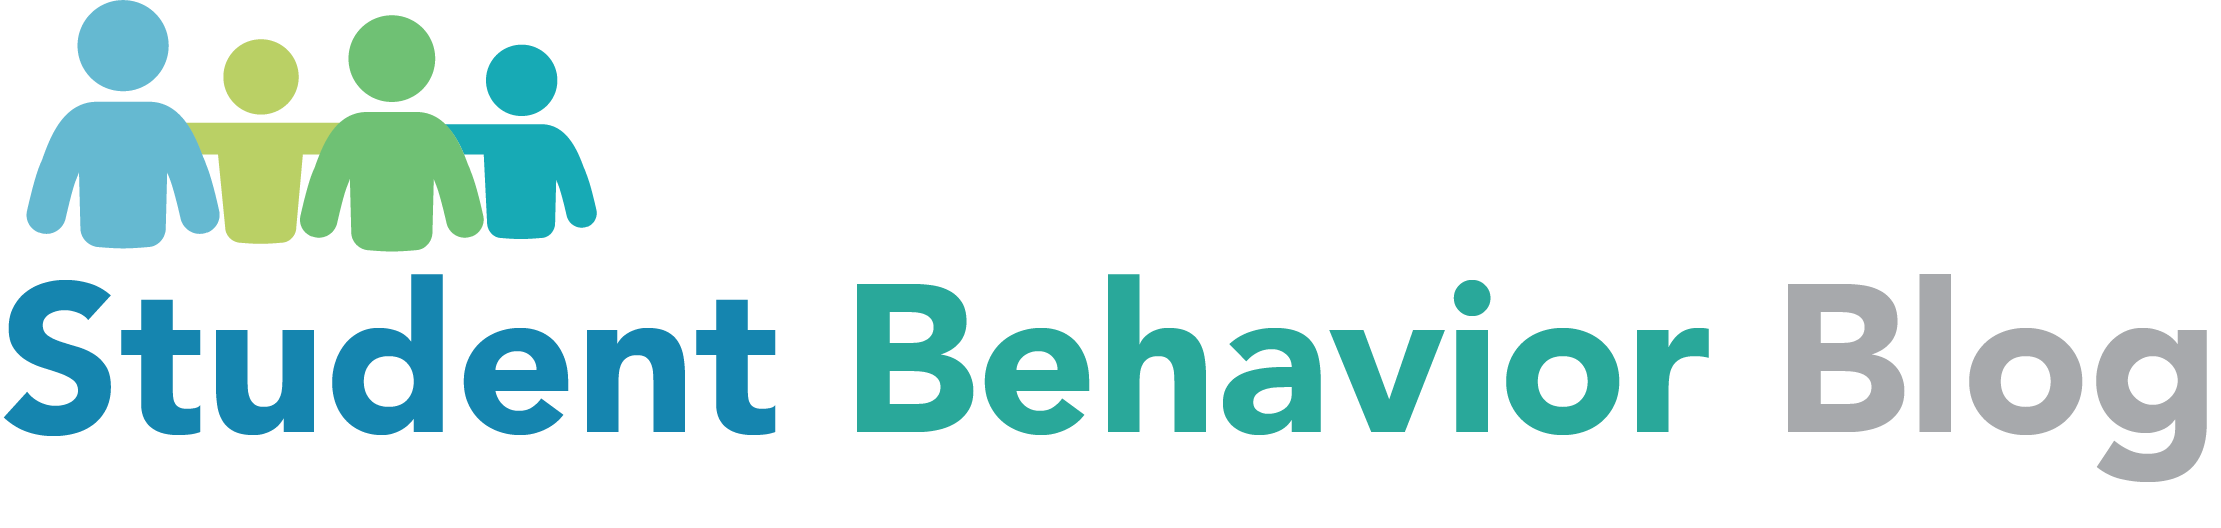 Student Behavior Blog Logo